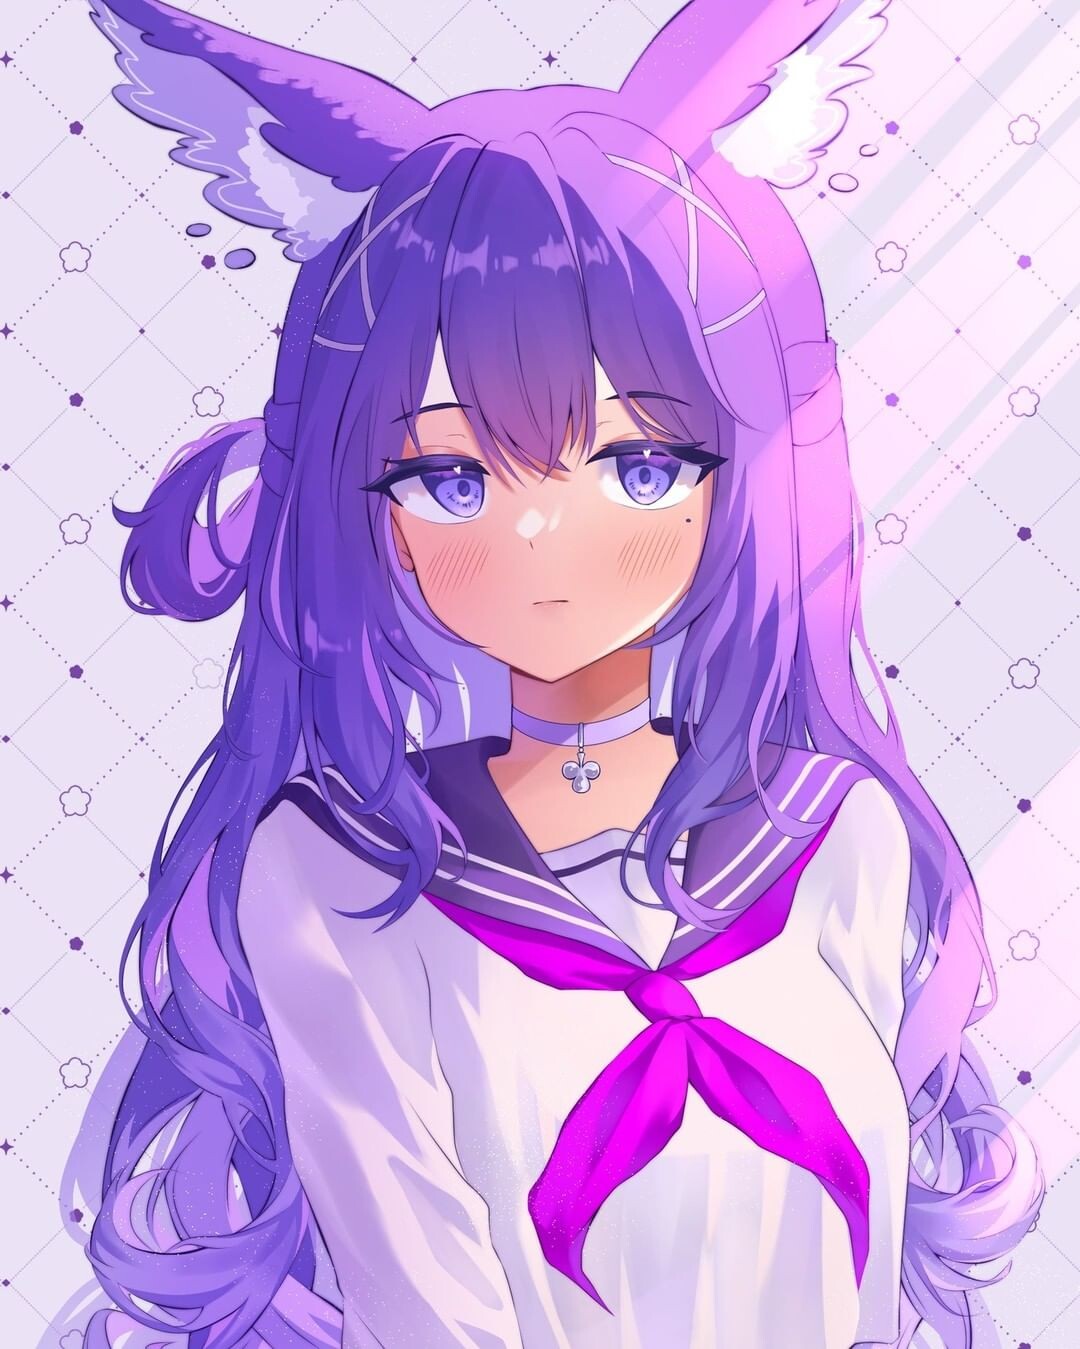 Anime girl with bunny ears by RainbowTalyaUnicorn on DeviantArt